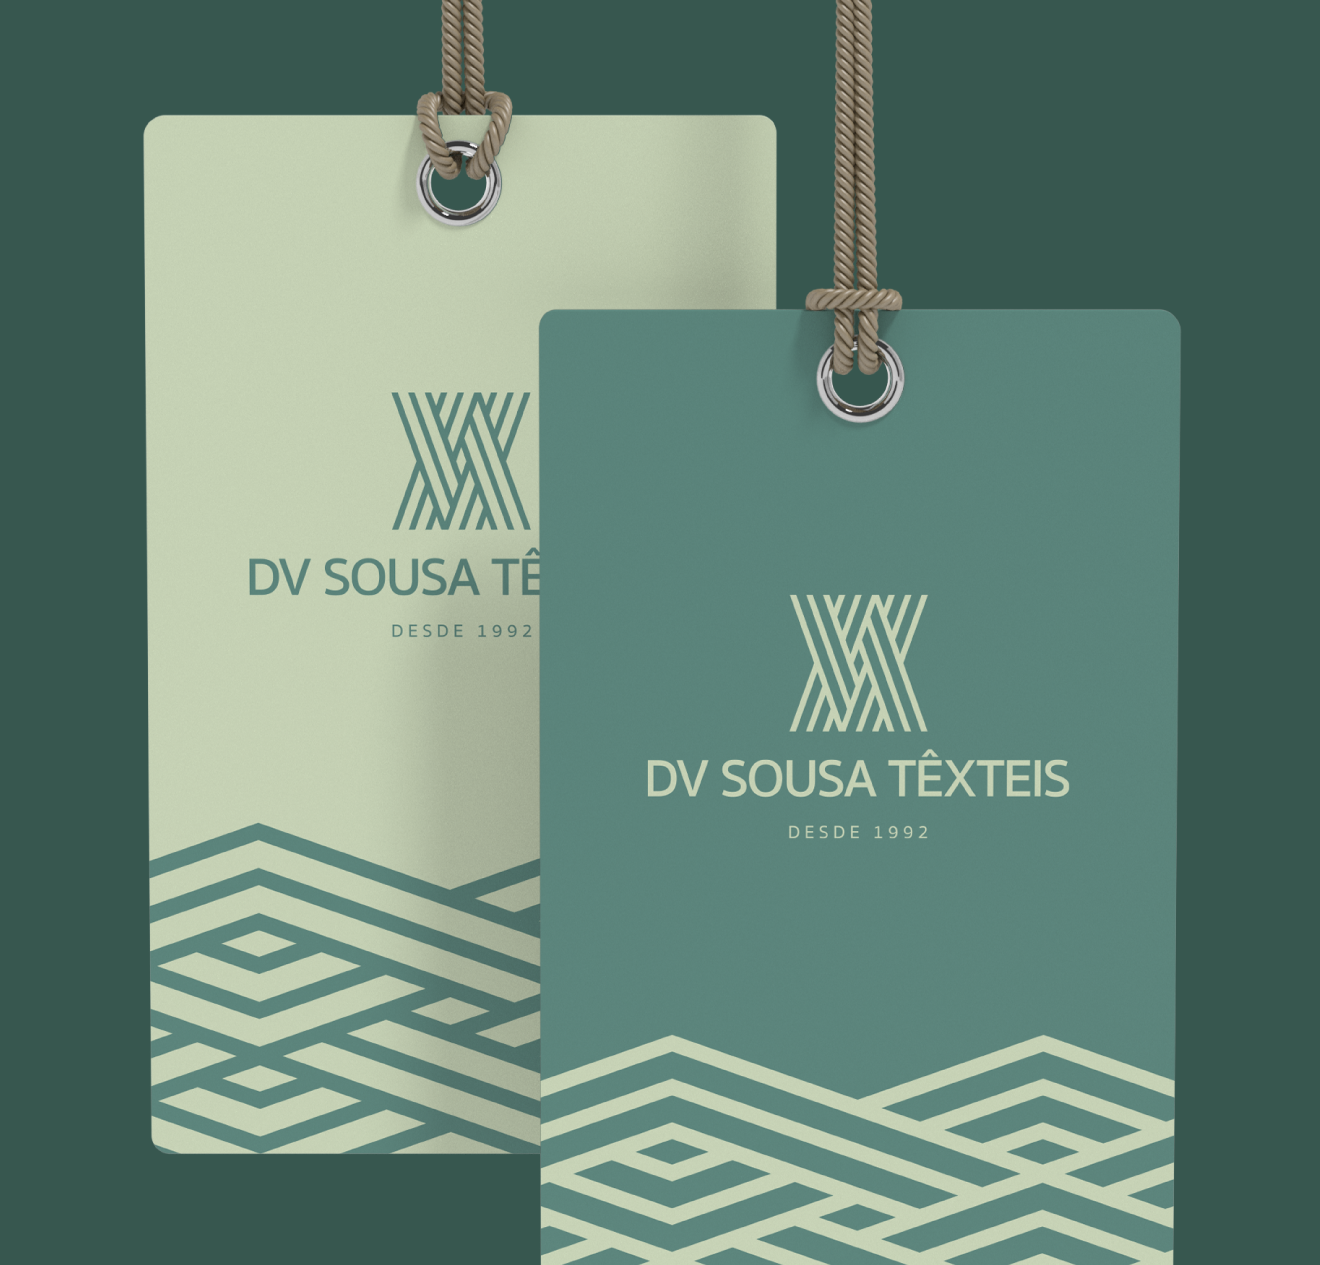 DV Sousa Têxteis